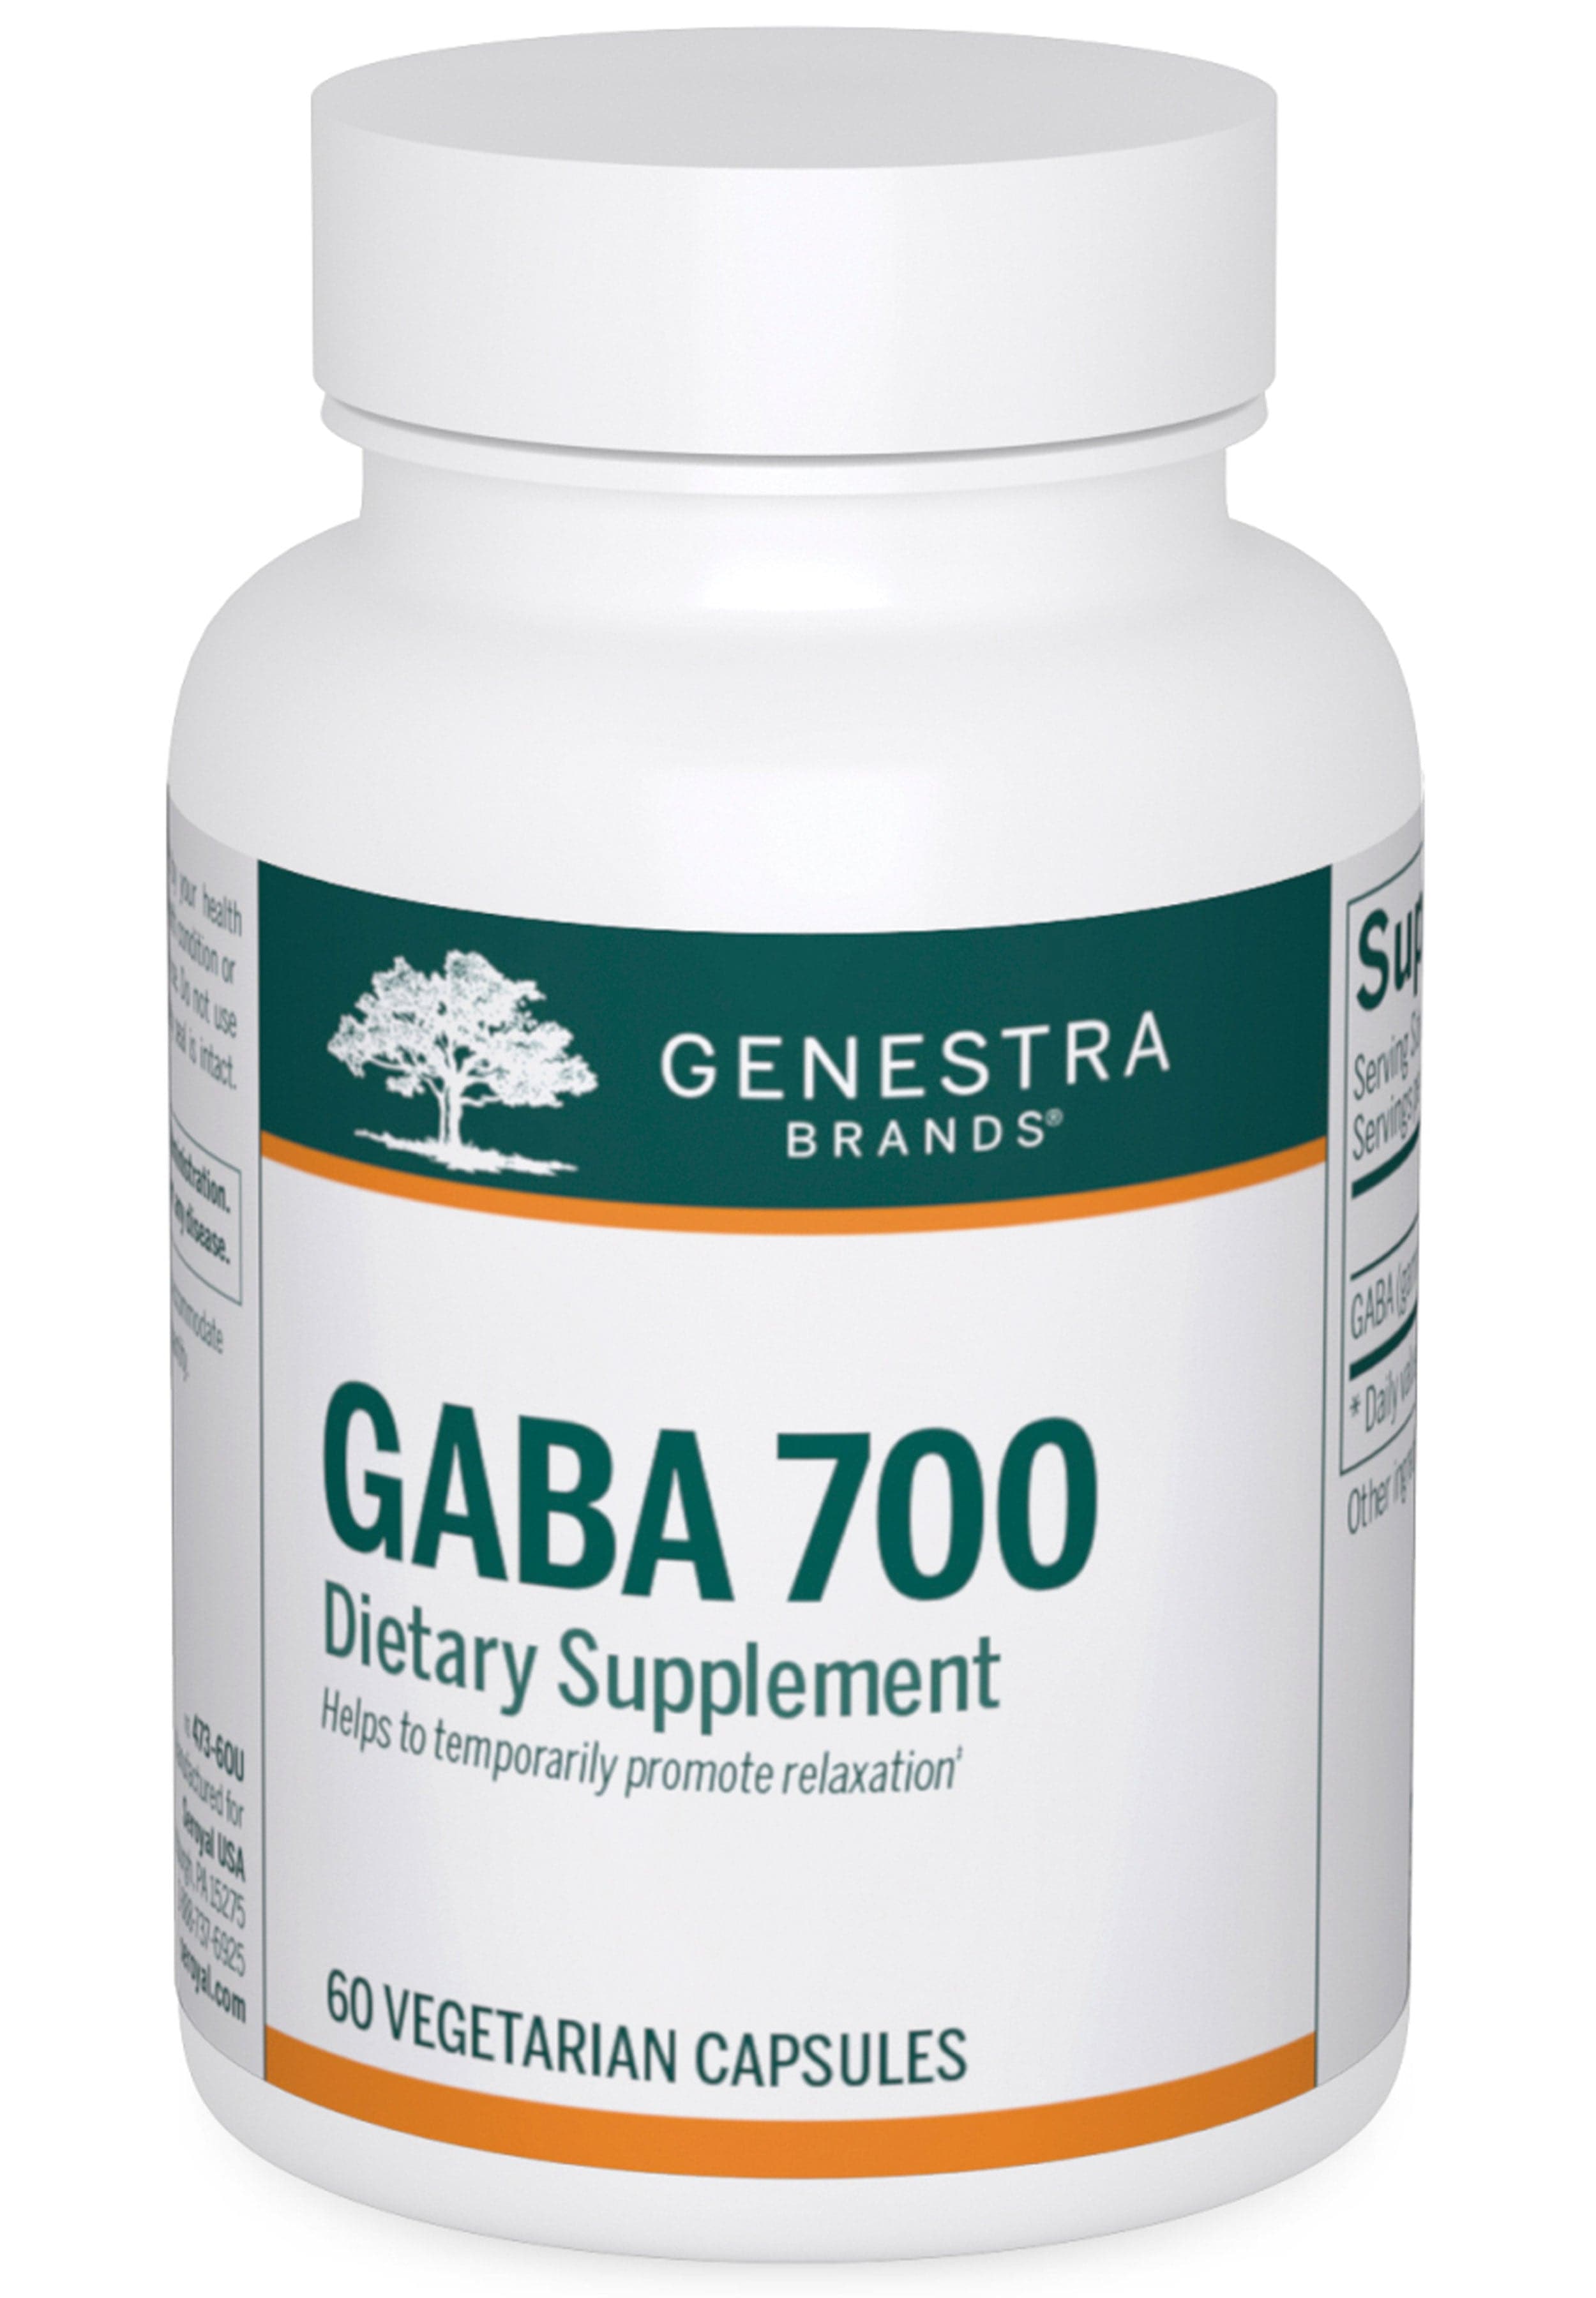 Genestra Brands GABA 700